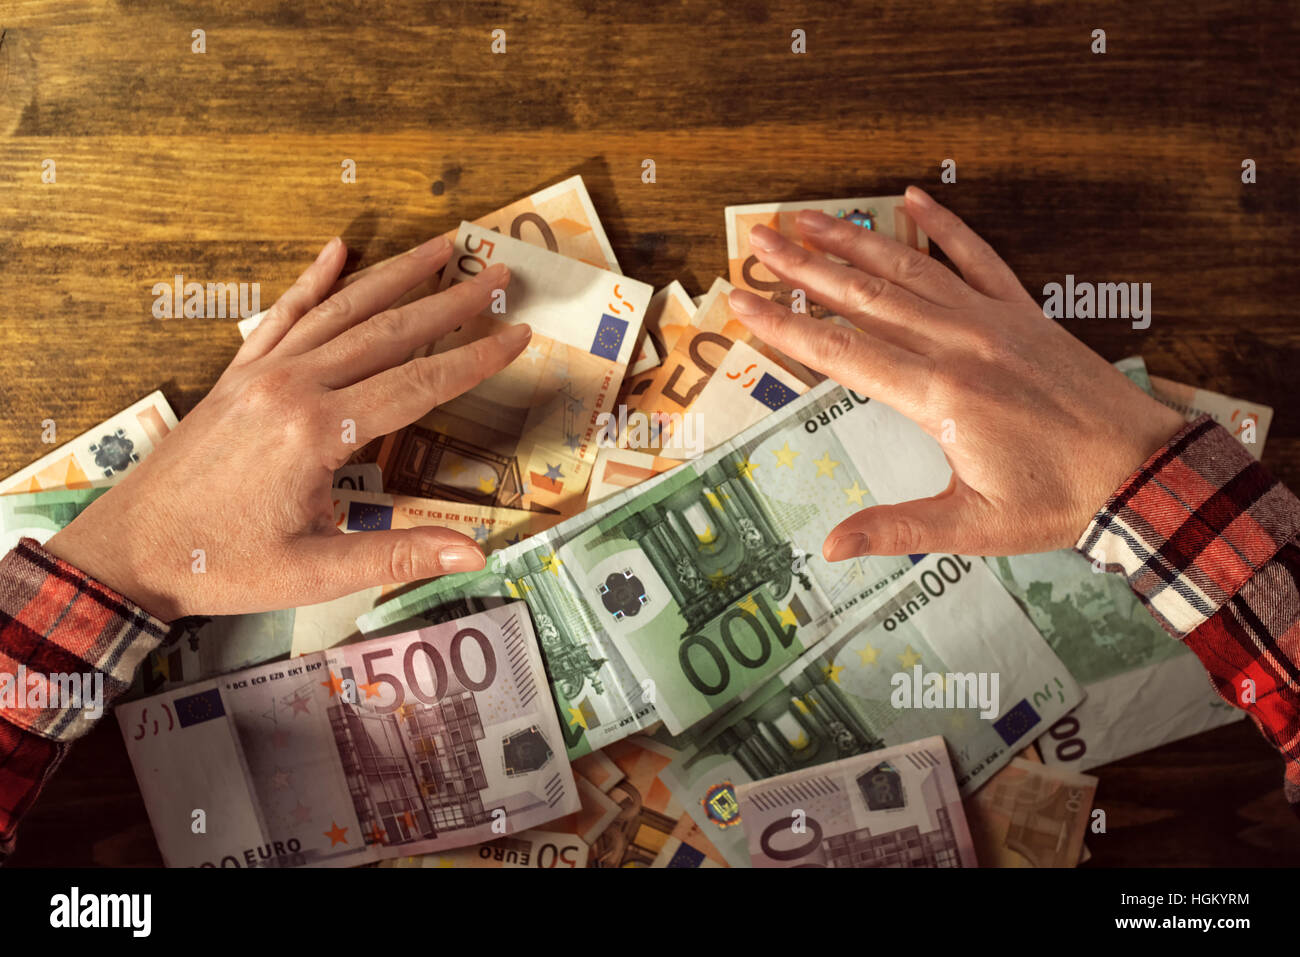 Les mains avides de retrait du tas de billets en euros cash money sur office 24 Banque D'Images